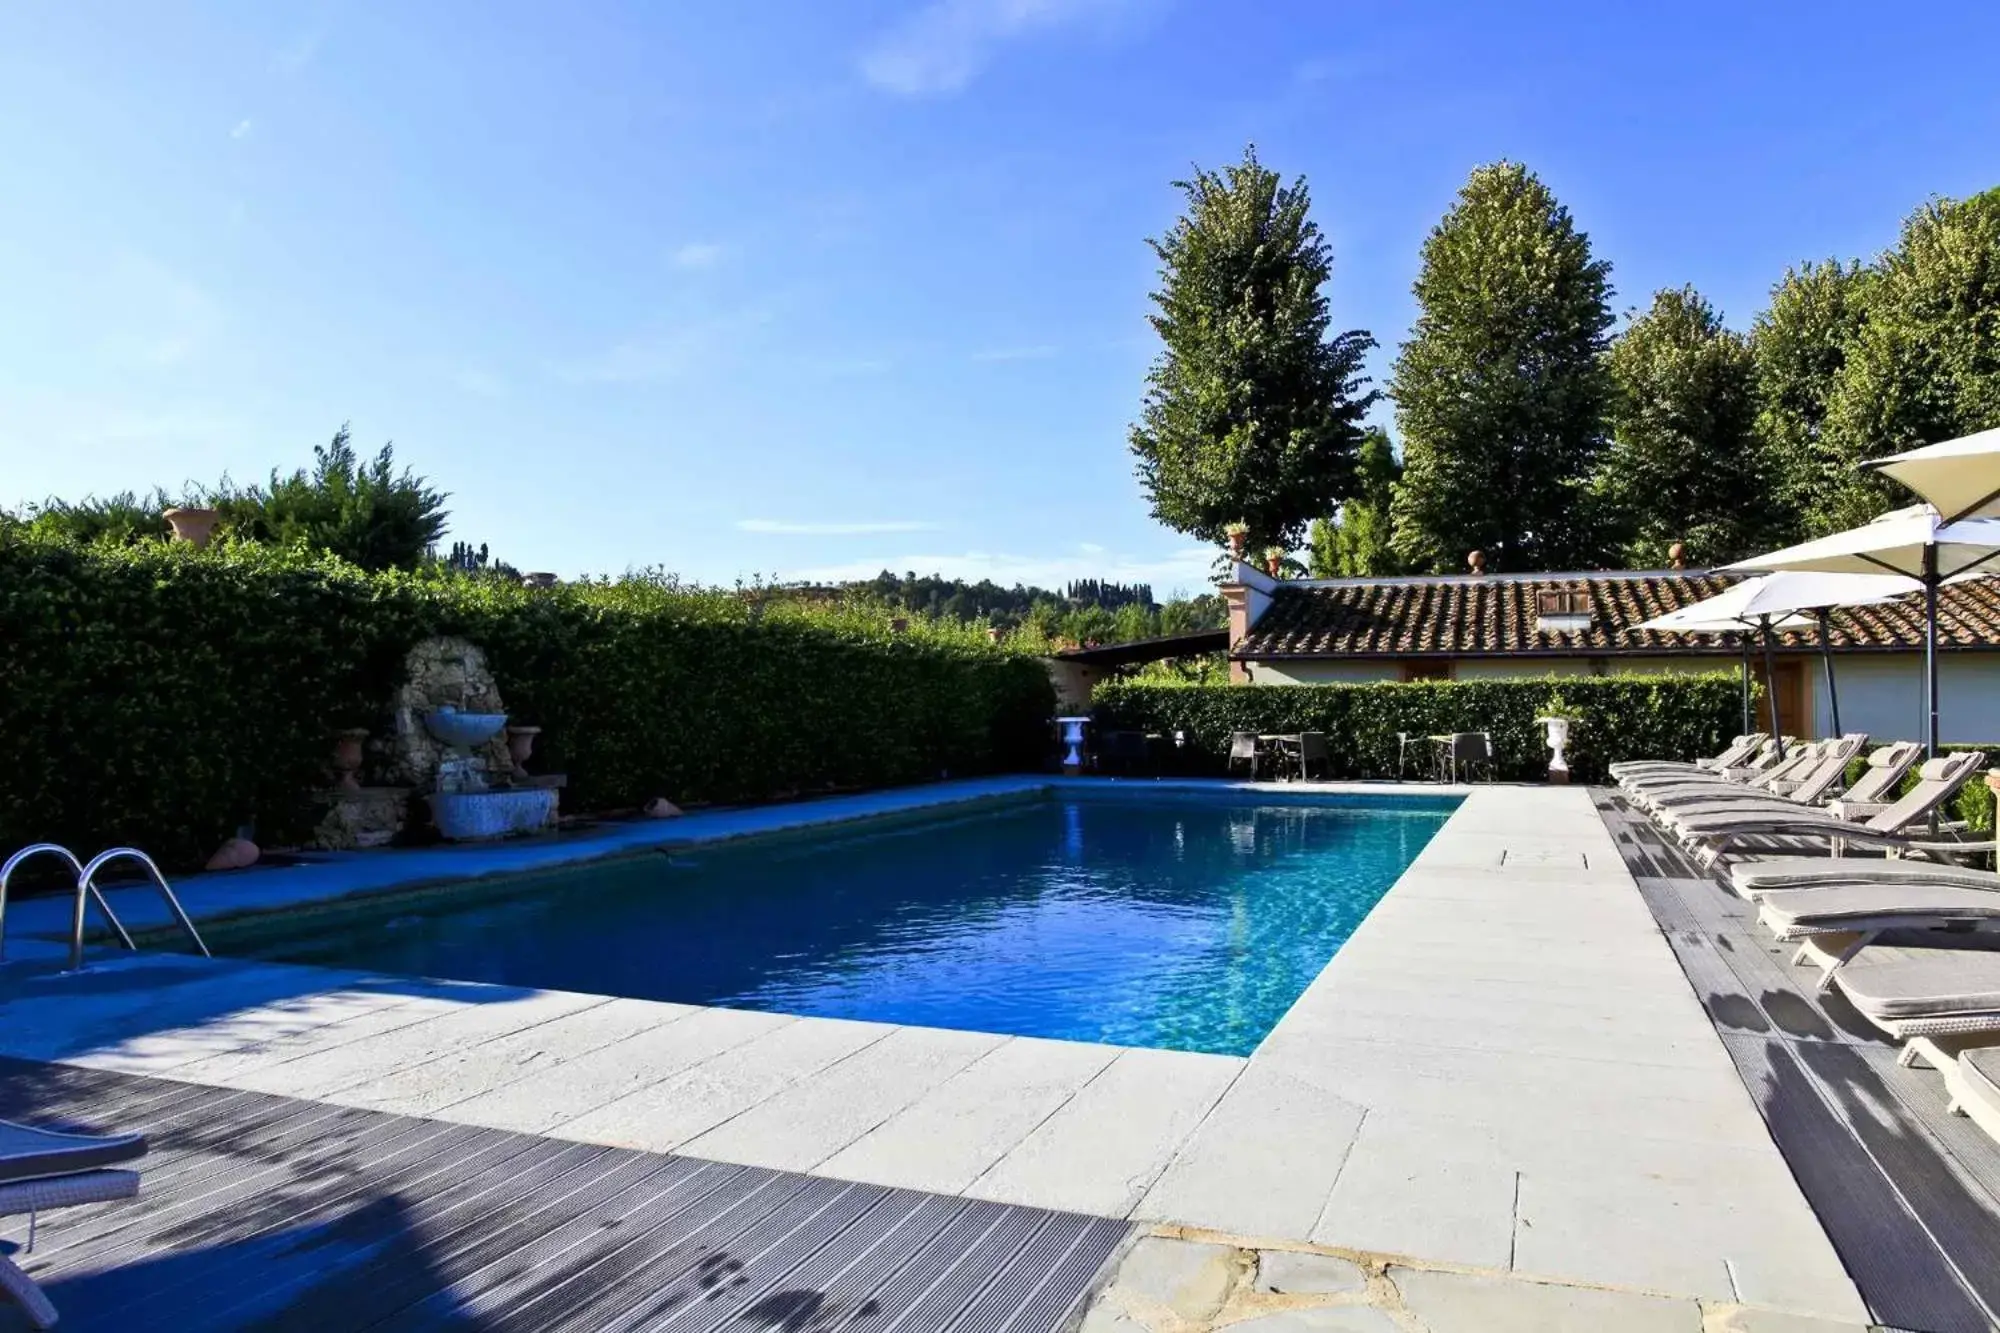 Swimming Pool in Villa Olmi Firenze